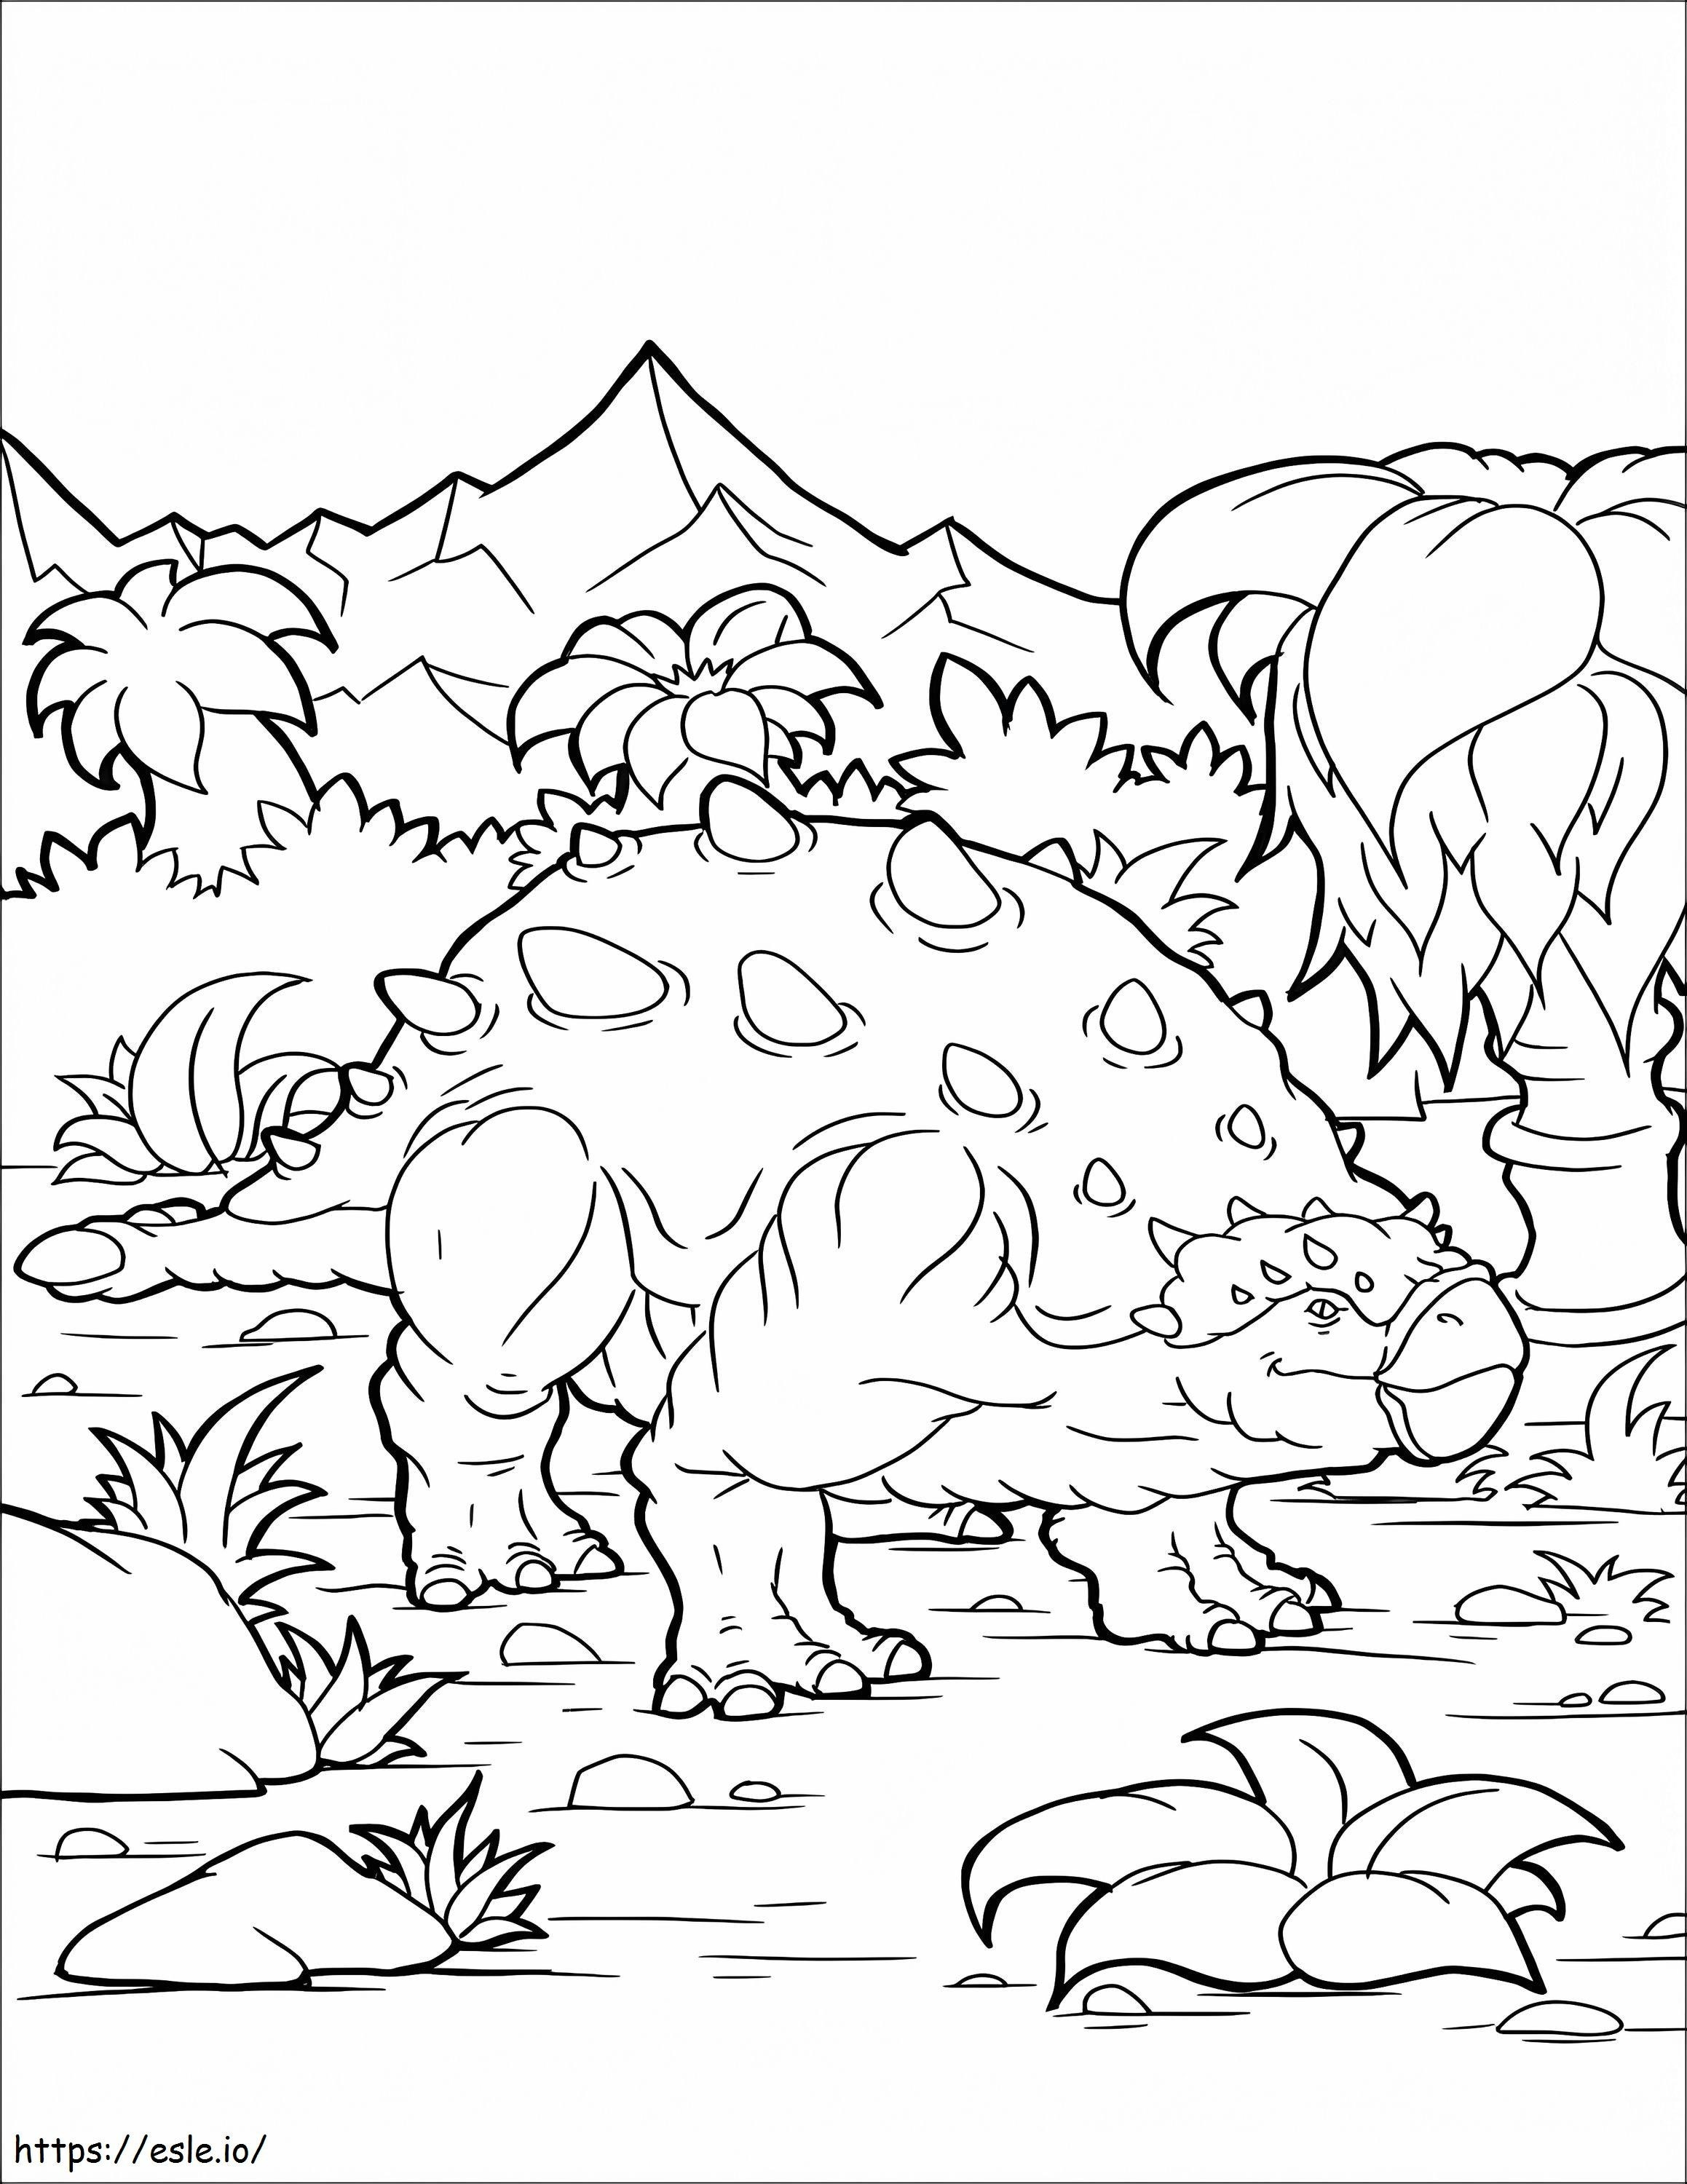 Dinossauro Anquilossauro 791X1024 para colorir